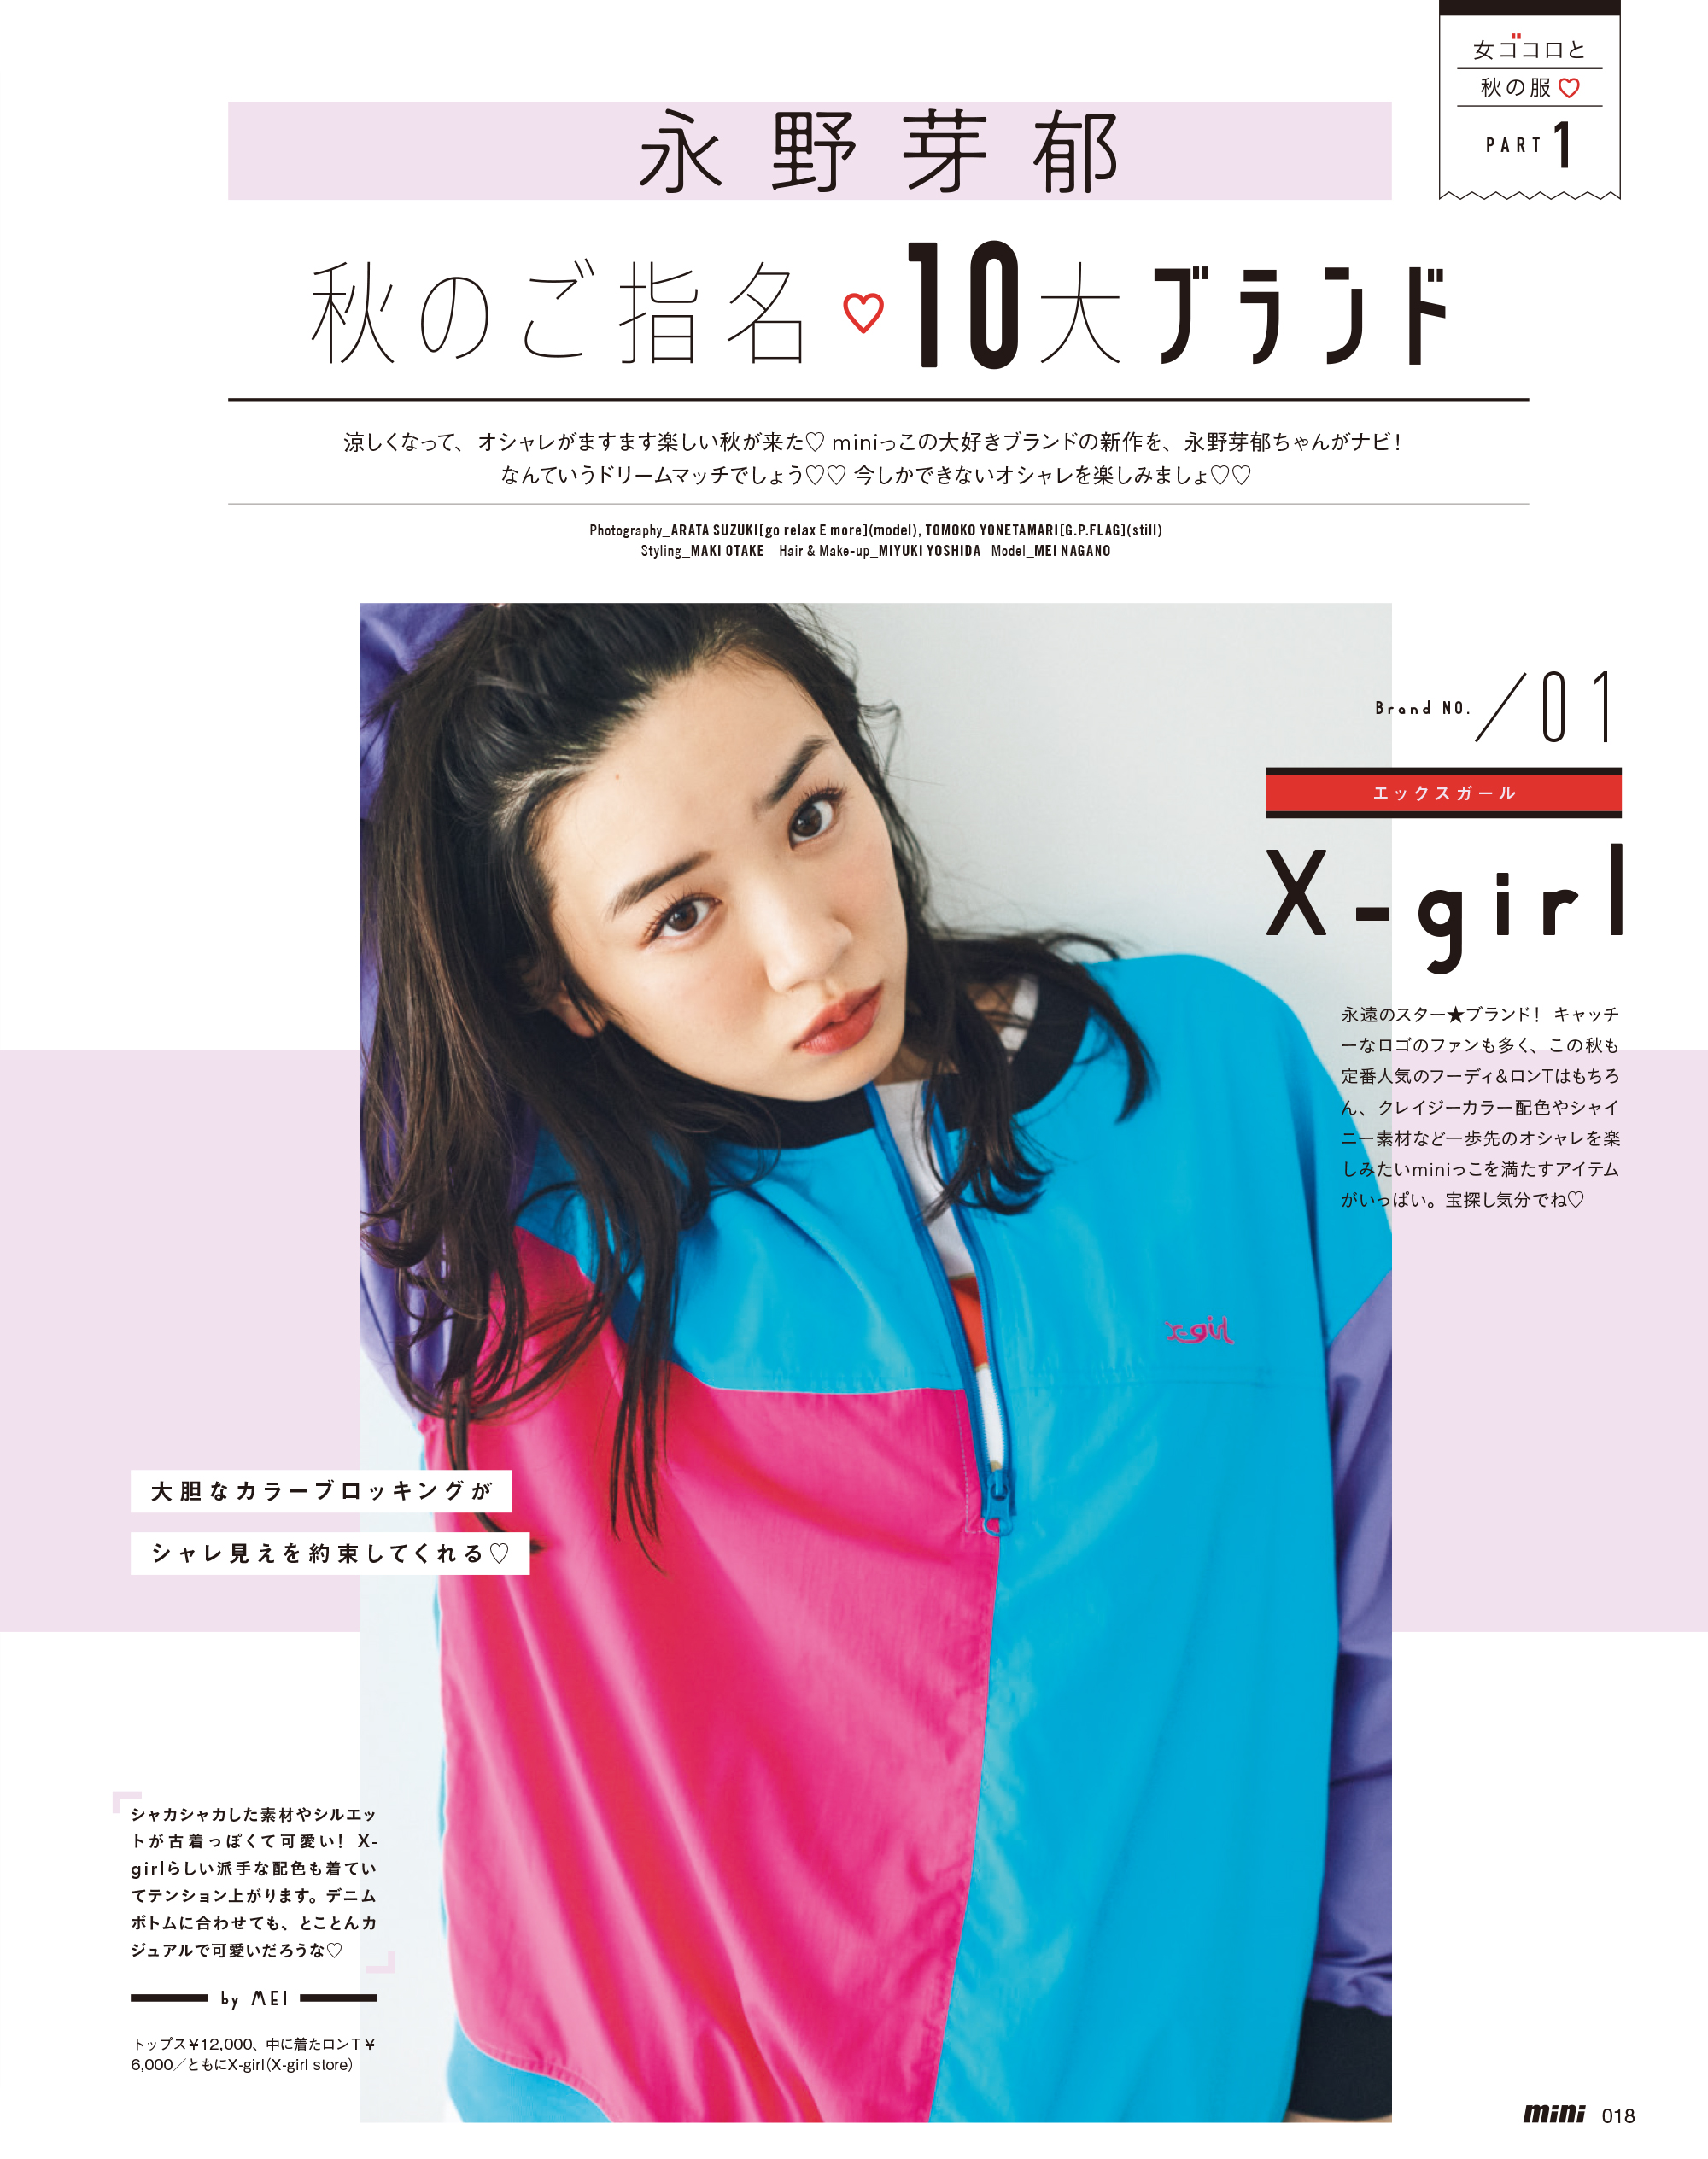 人気no 1ストリートファッション誌 Mini 今年３度目の完売 株式会社 宝島社のプレスリリース